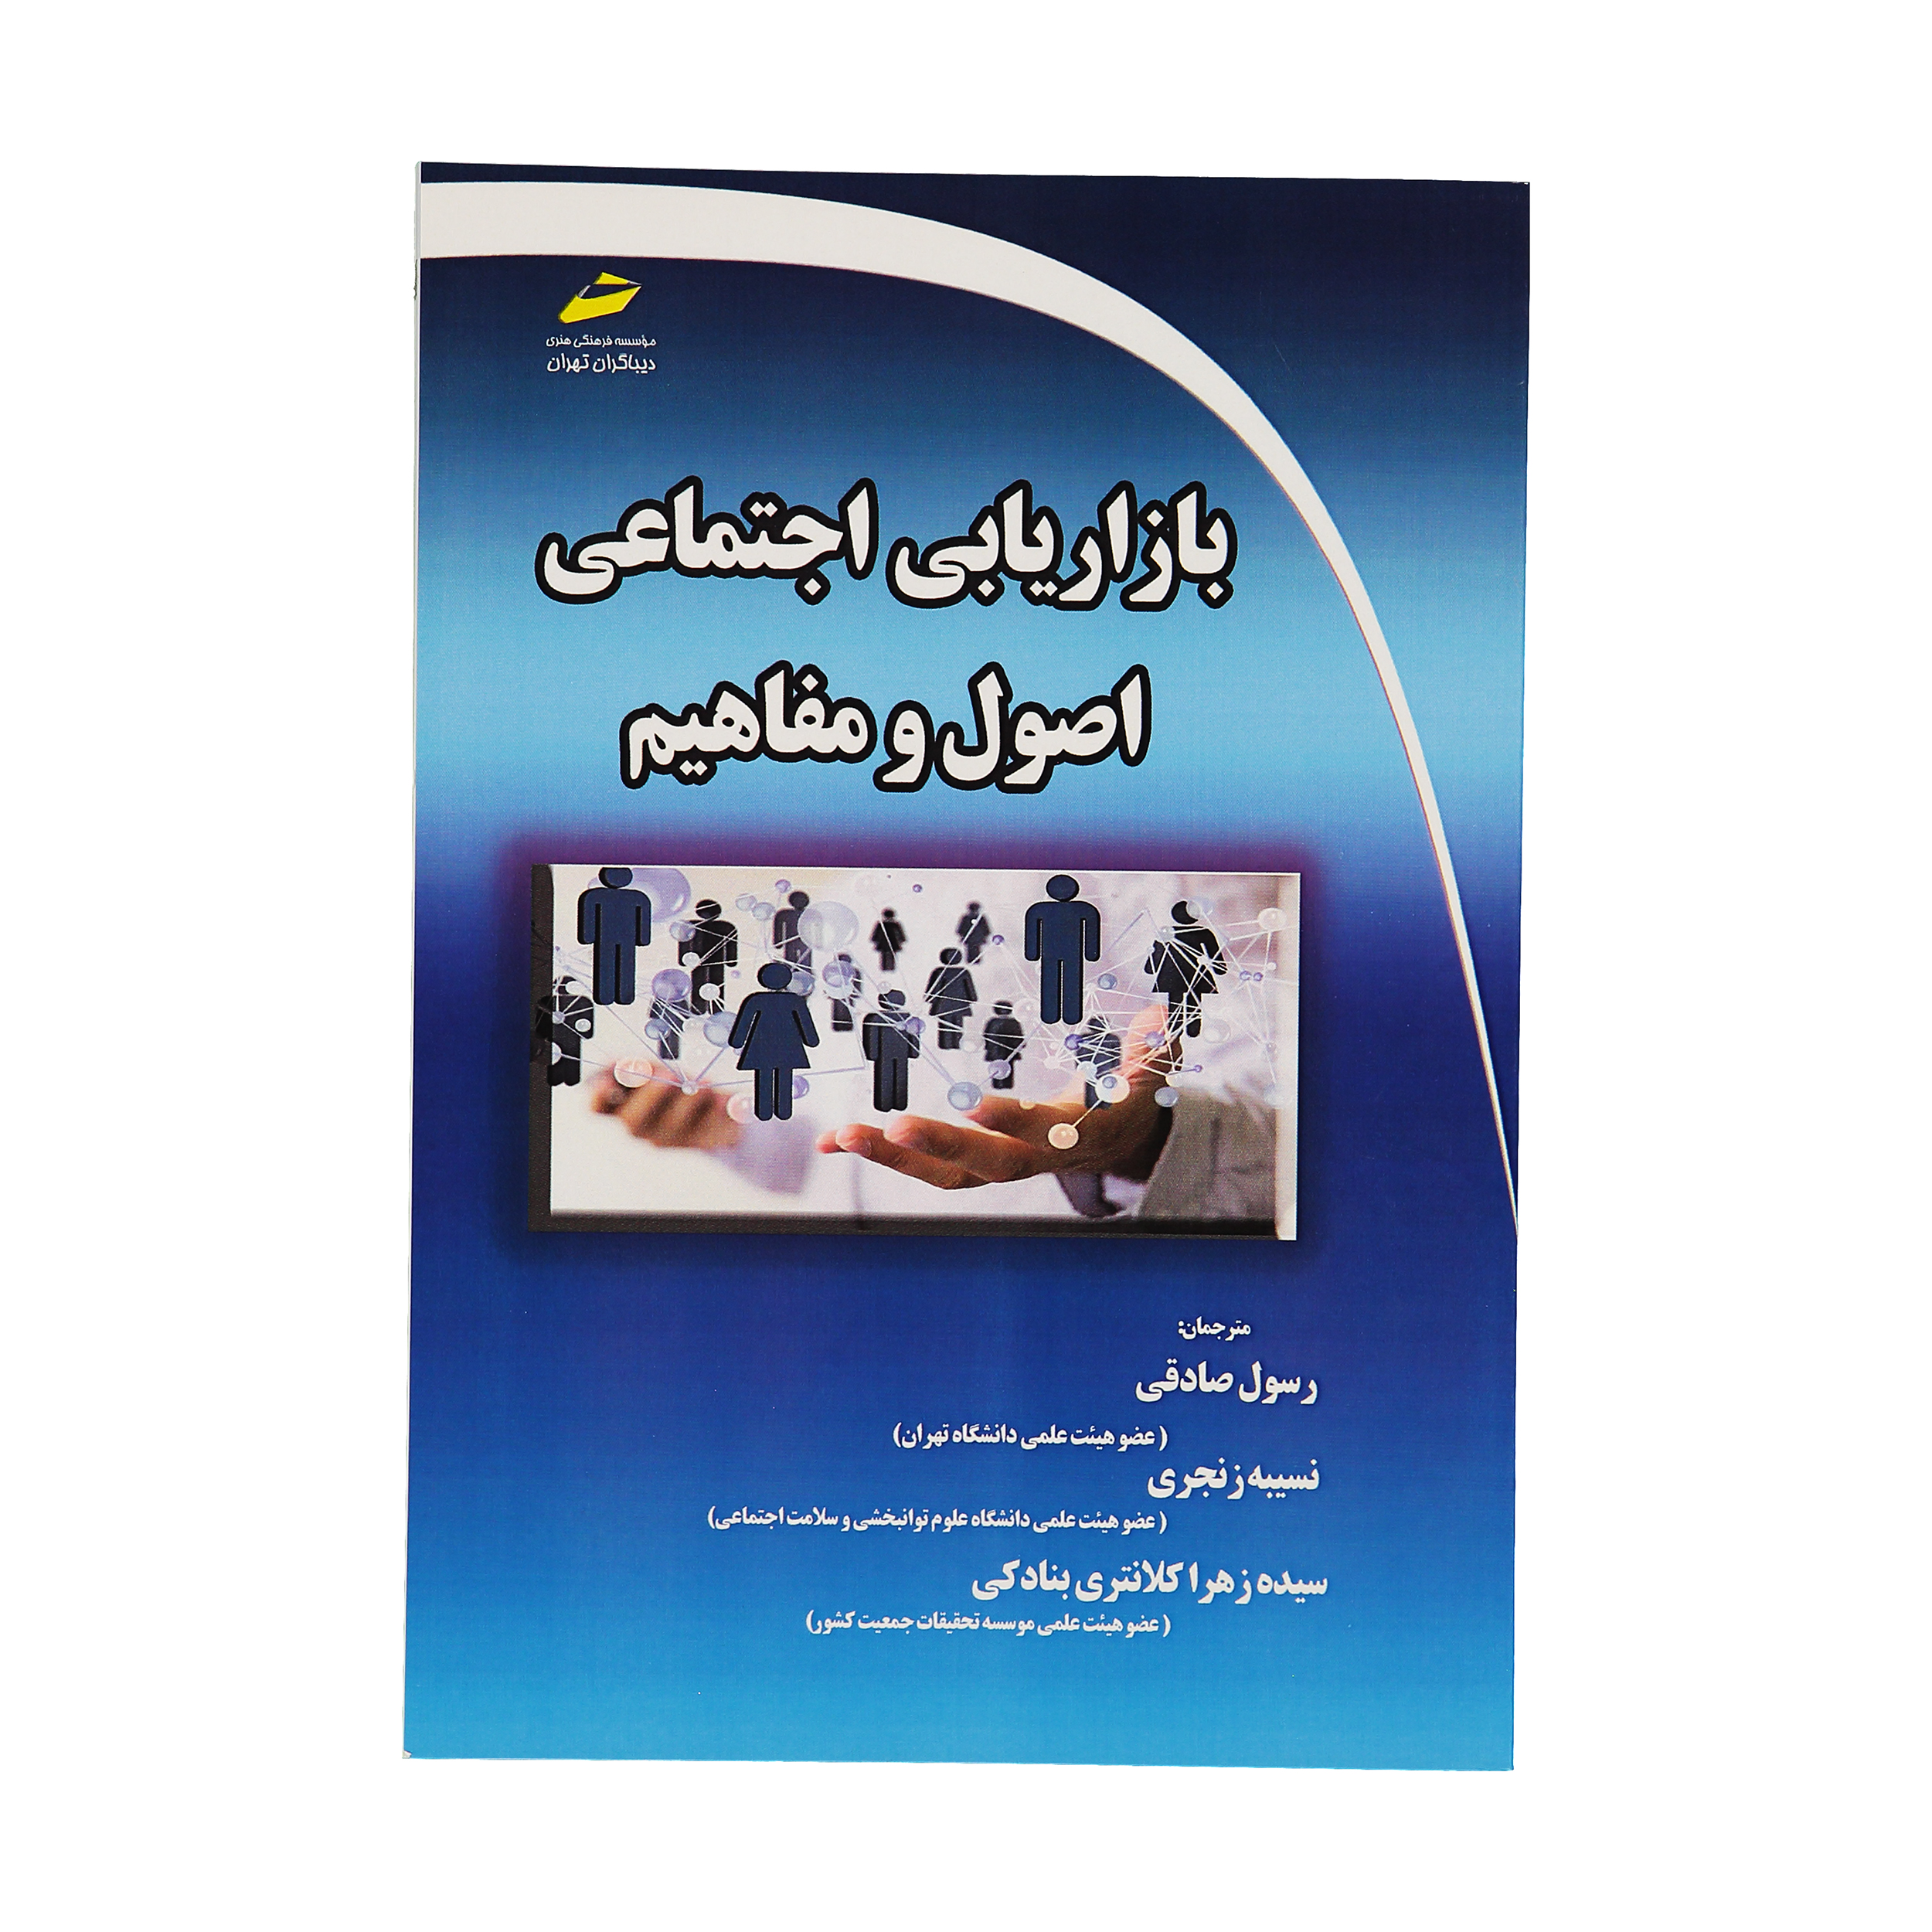 کتاب بازاريابی اجتماعی اصول و مفاهيم اثر جمعی از نویسندگان نشر دیباگران تهران